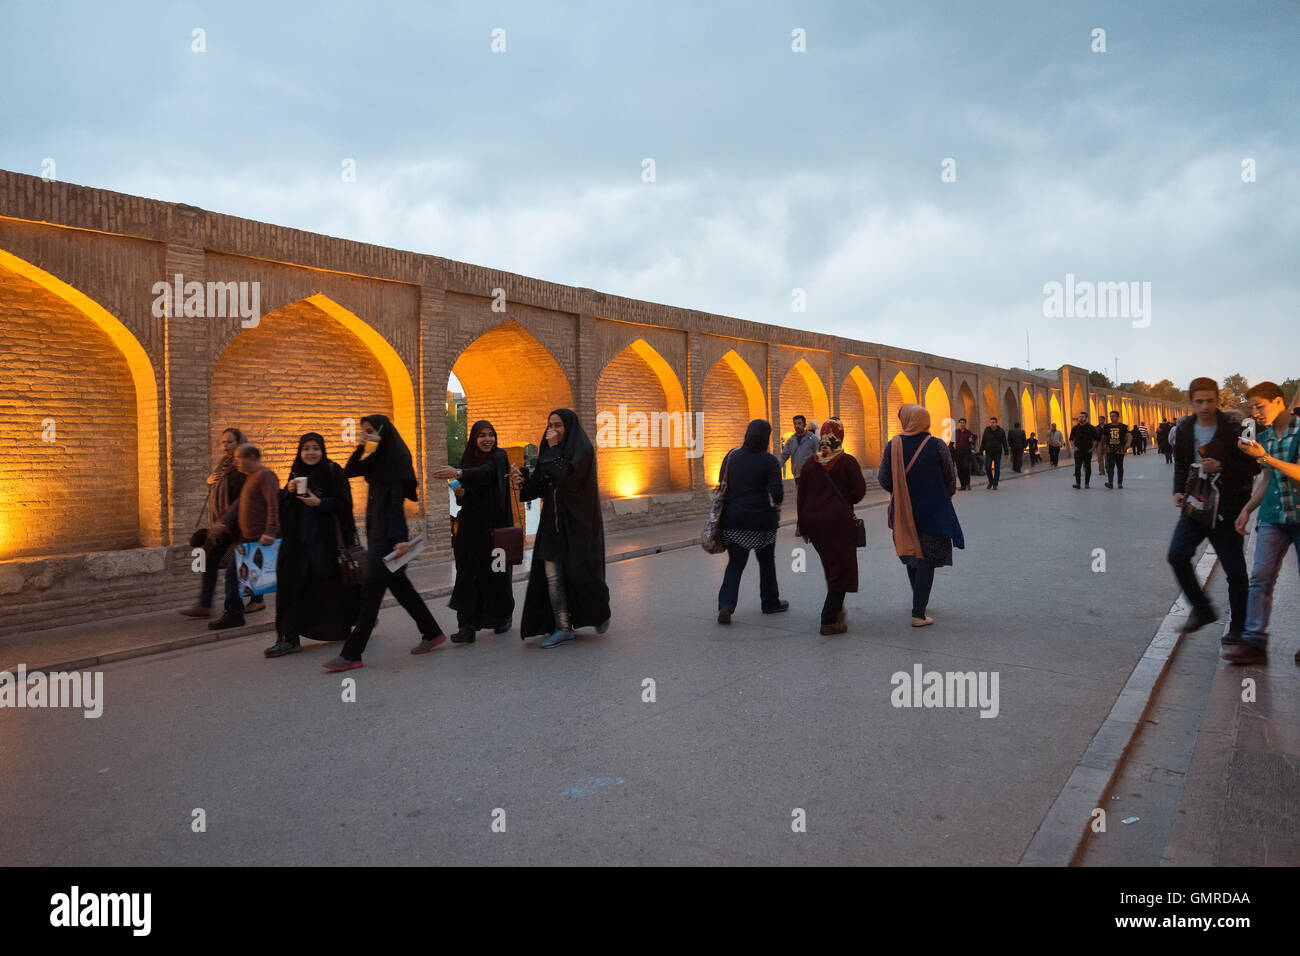 Allāhverdi Khan populairement connu sous le nom de pont Si-O-seh pol "Le pont de trente-trois travées" , l'un des 11 ponts d'Isfahan, Iran et le plus long pont sur la rivière Zayandeh avec la longueur totale de 297,76 mètres (976,9 pieds). Il est hautement classé comme étant l'un des exemples les plus célèbres de la conception de ponts safavides. Banque D'Images